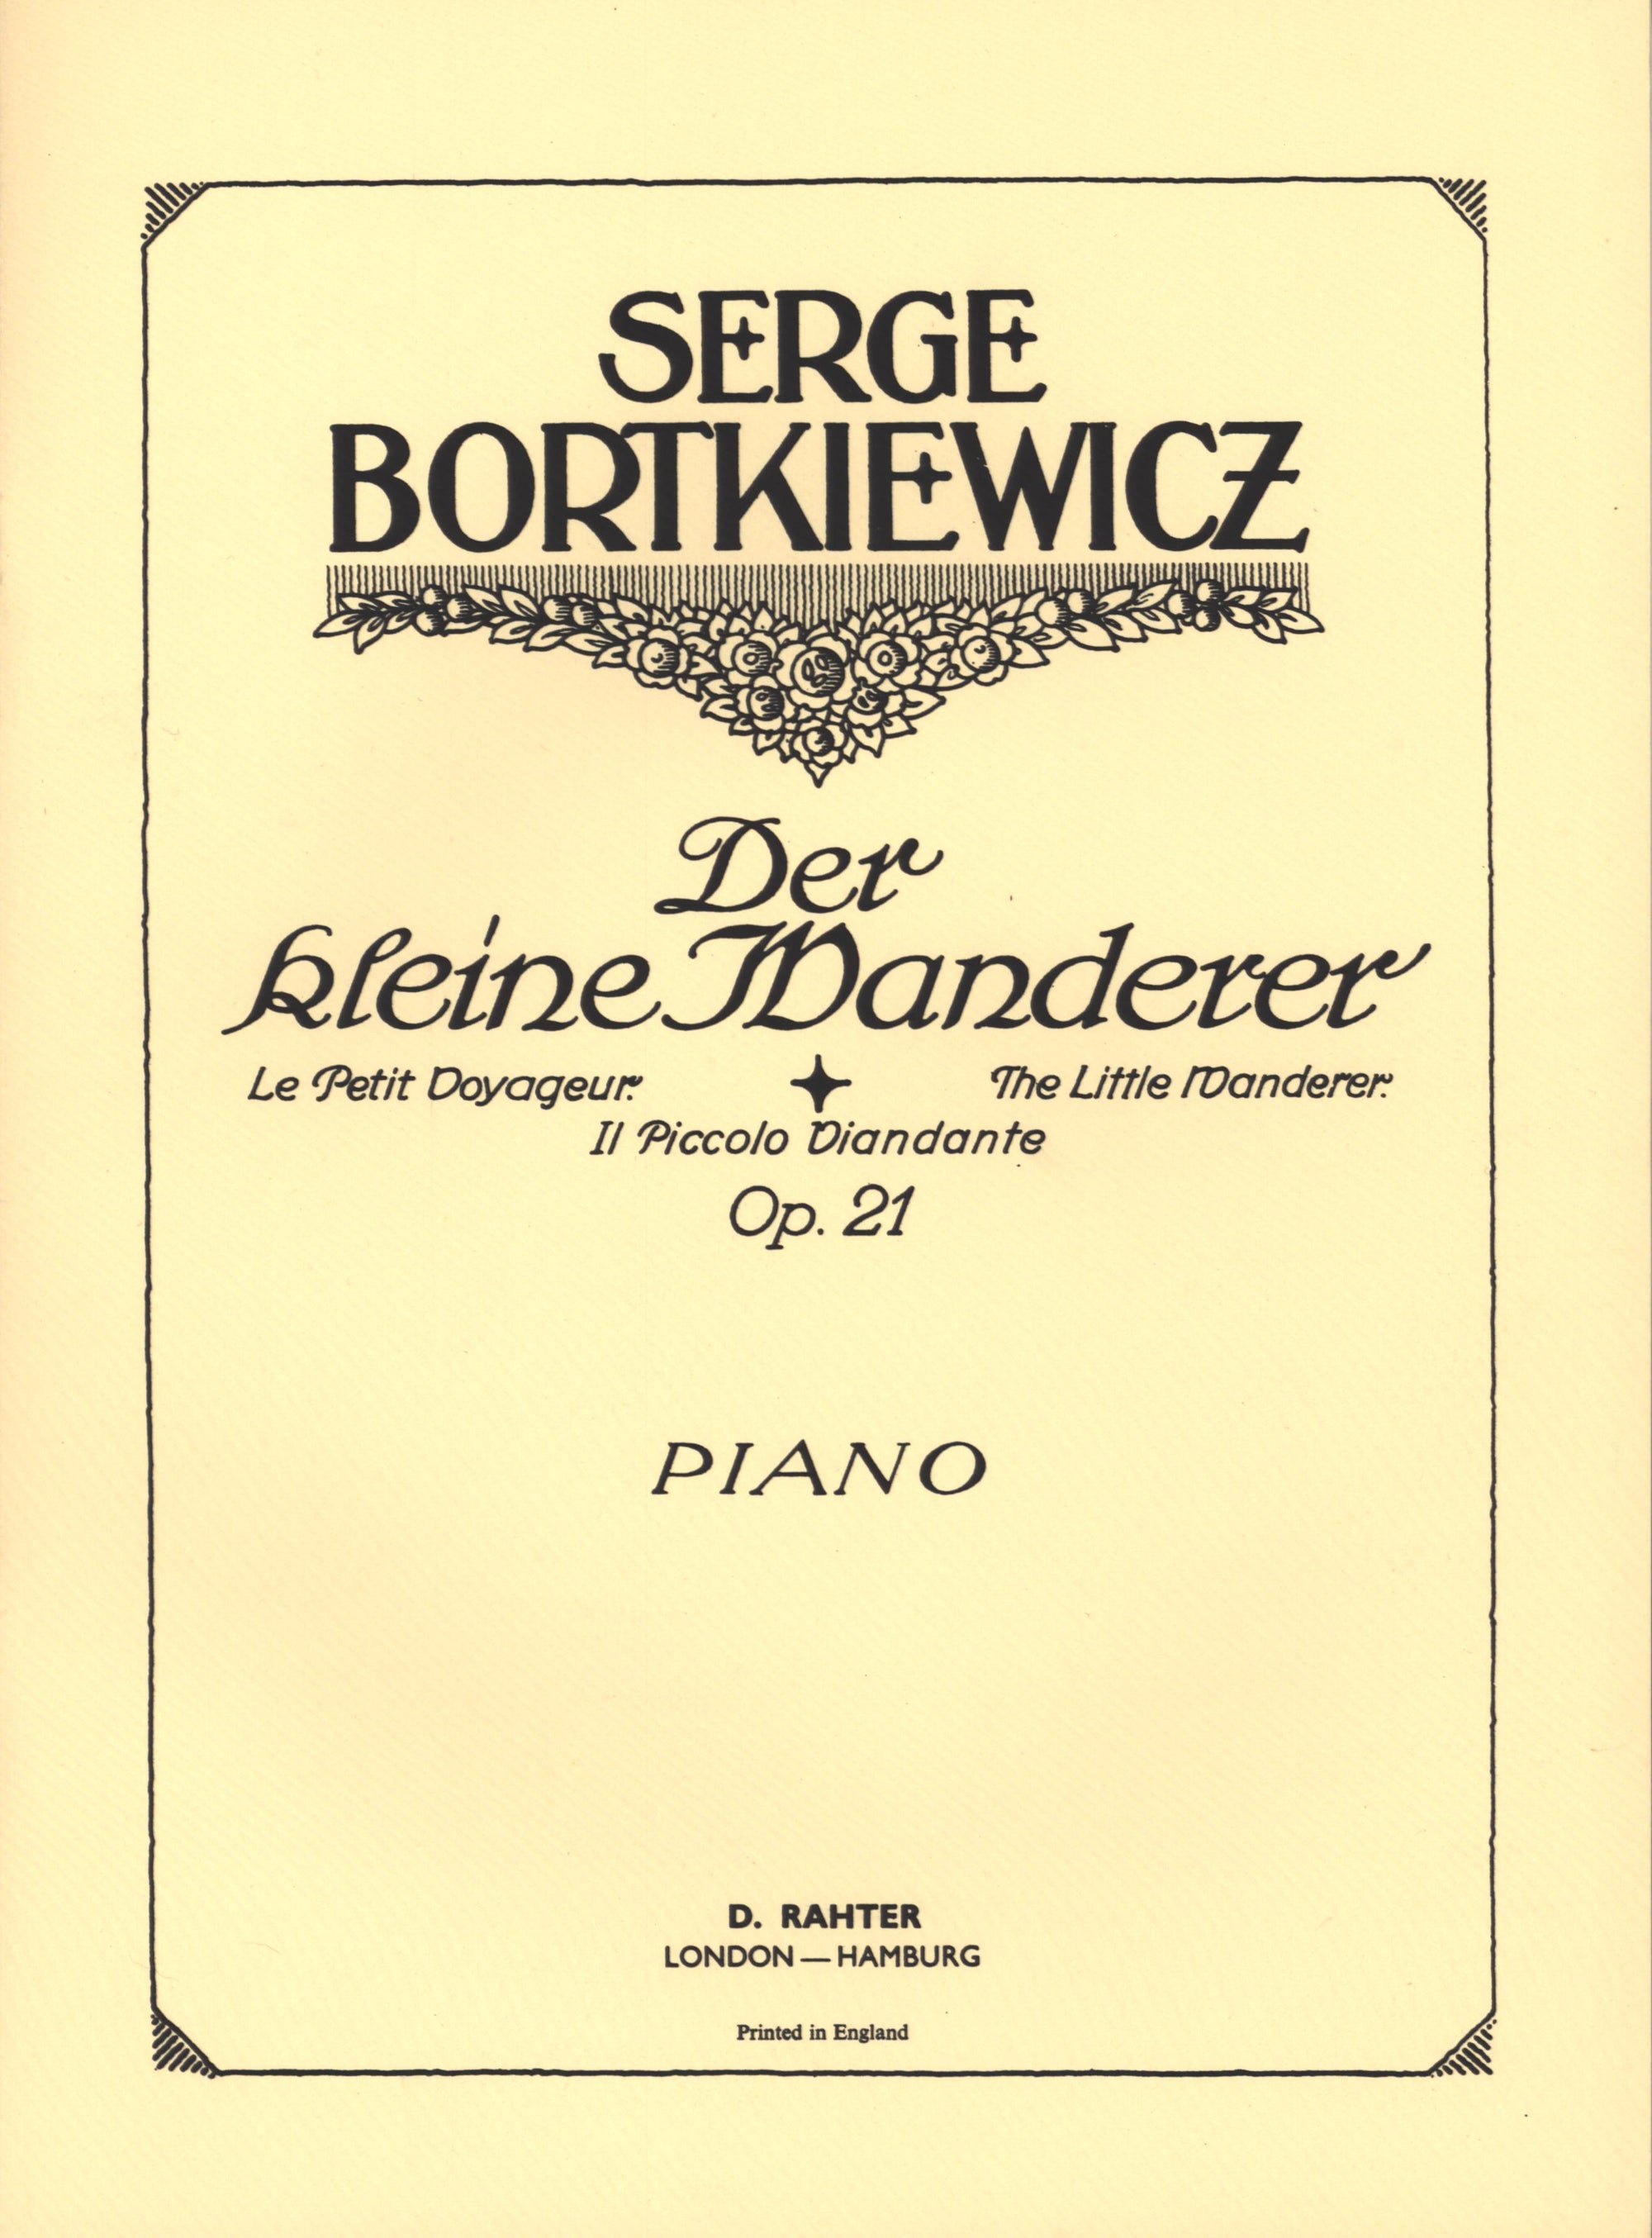 Bortkiewicz: The Little Wanderer, Op. 21